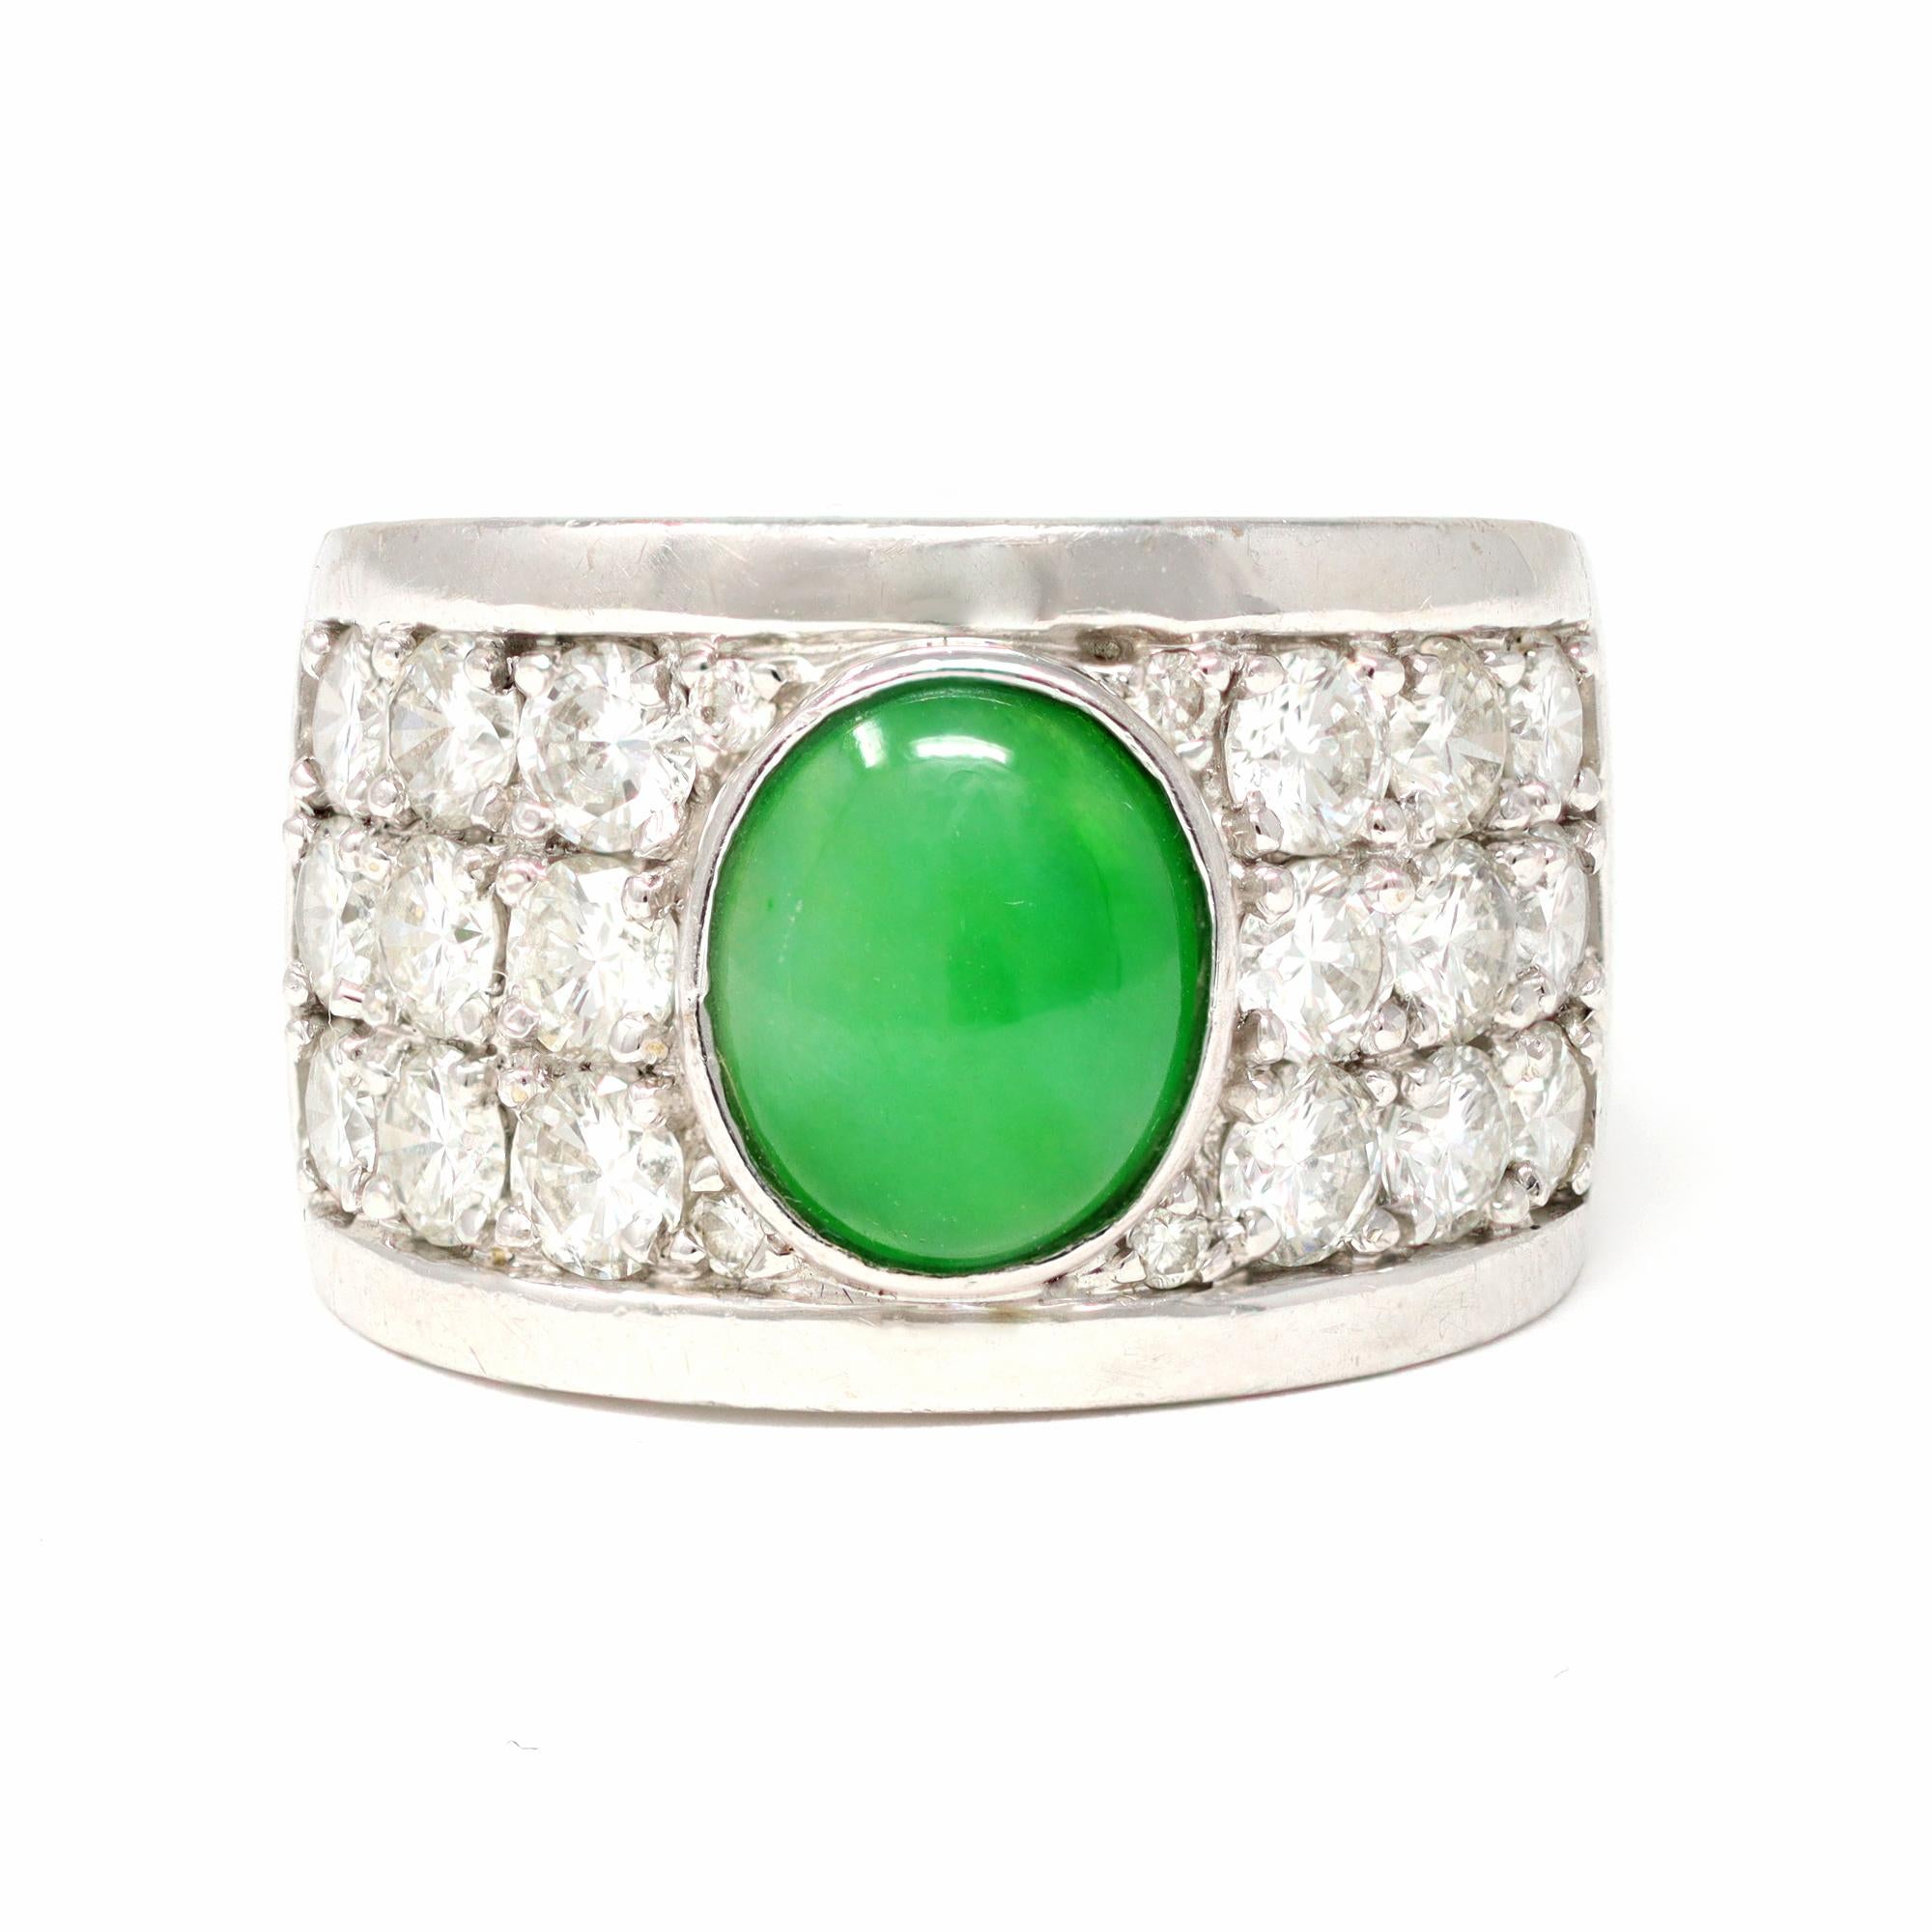 Le grand anneau circa 1980 présente en son centre un cabochon de jade naturel vert pomme et est entouré de diamants sertis en pavé. Le cabochon de jade mesure 7,5 millimètres de large et 9,2 millimètres de long. Elle est naturelle et ne nécessite